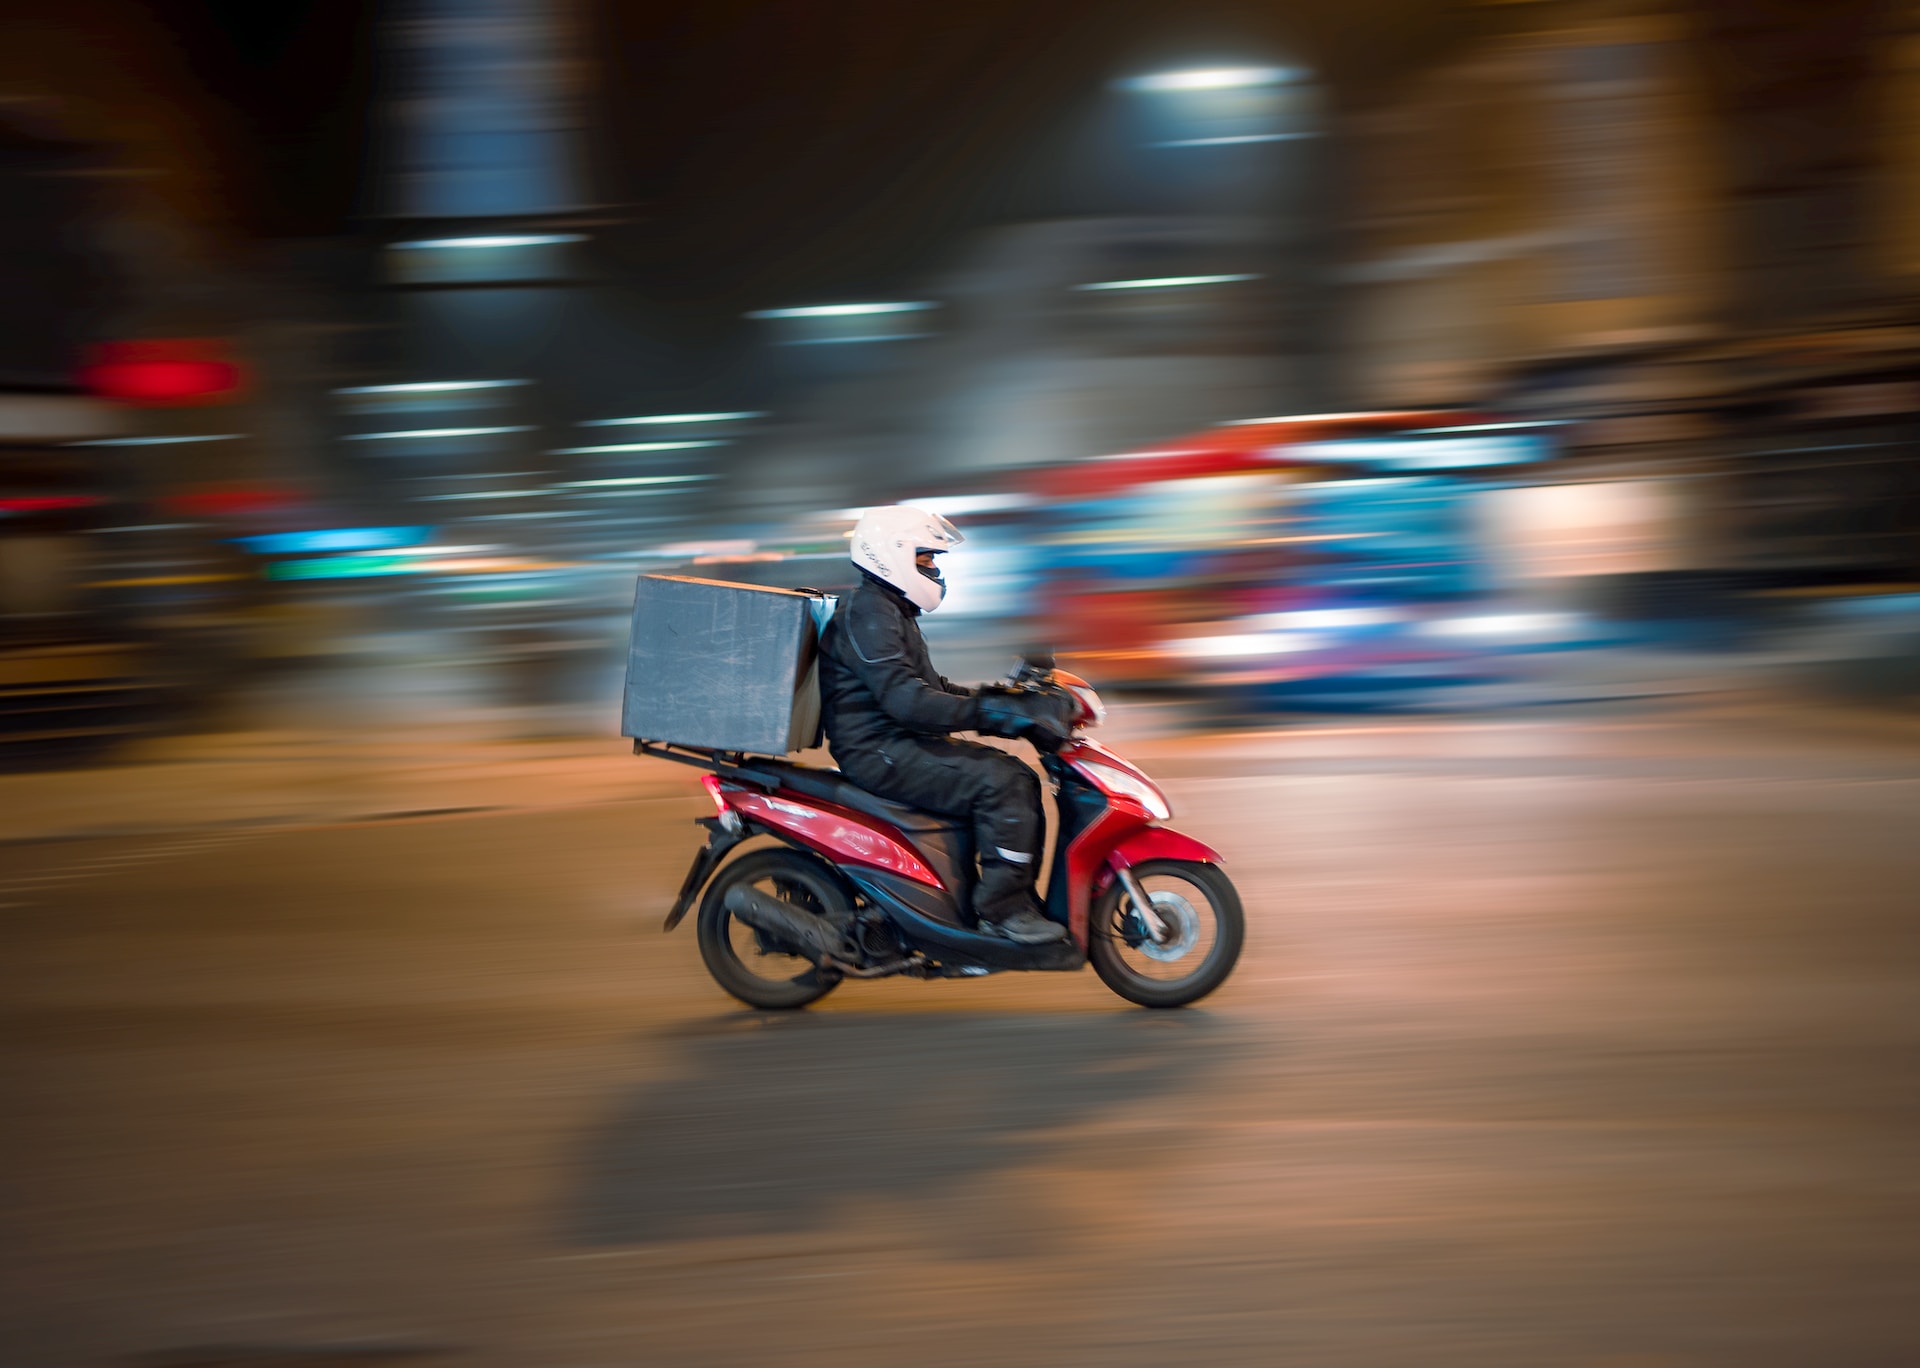 A speeding moped